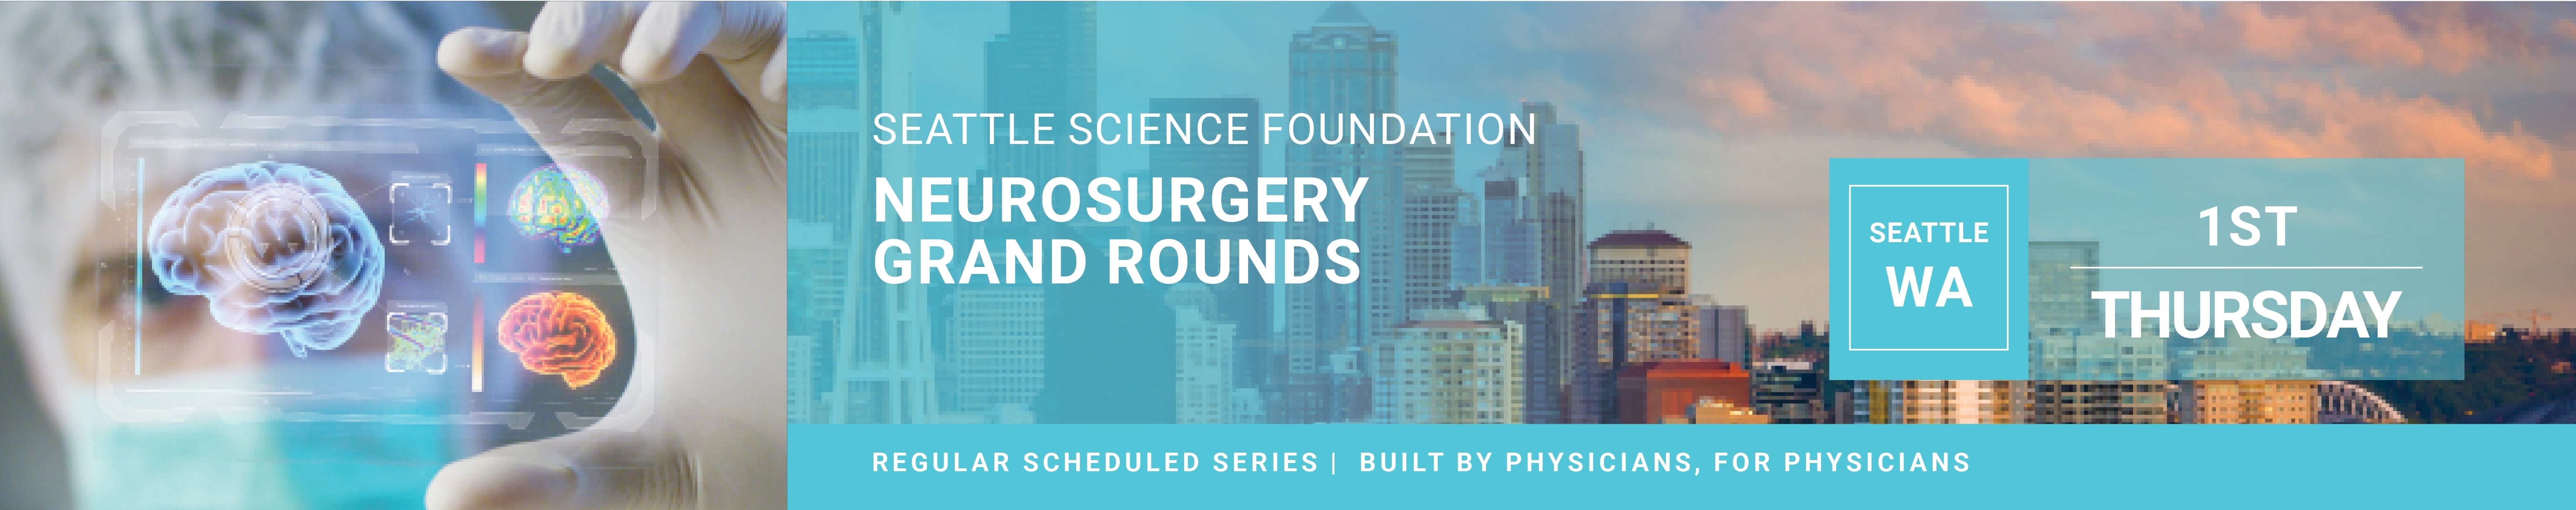 SSF Neurosurgery Grand Rounds 2020 Banner